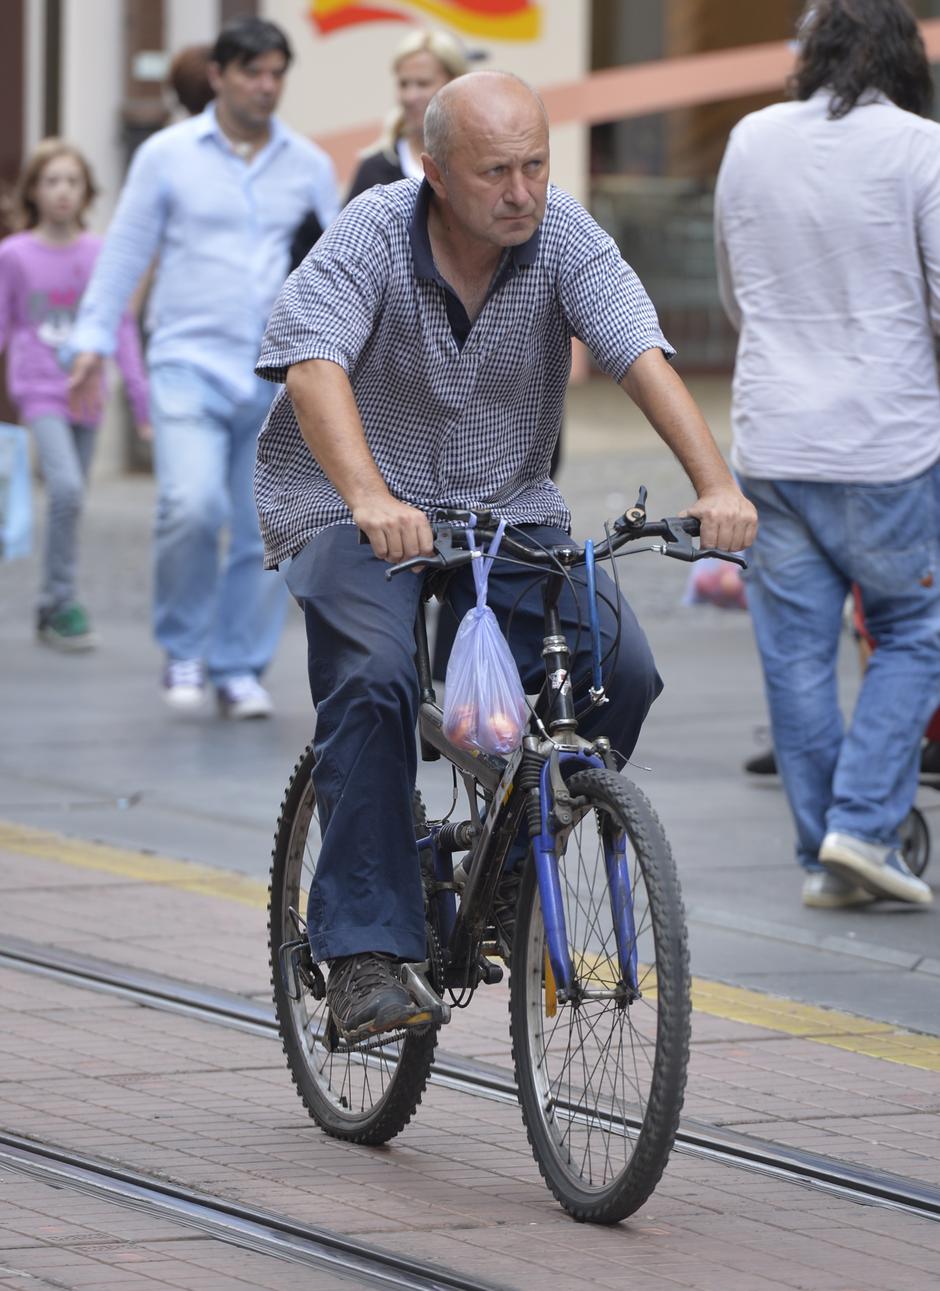 Sve više građana koriste bicikle kao prijevozno sredstvo